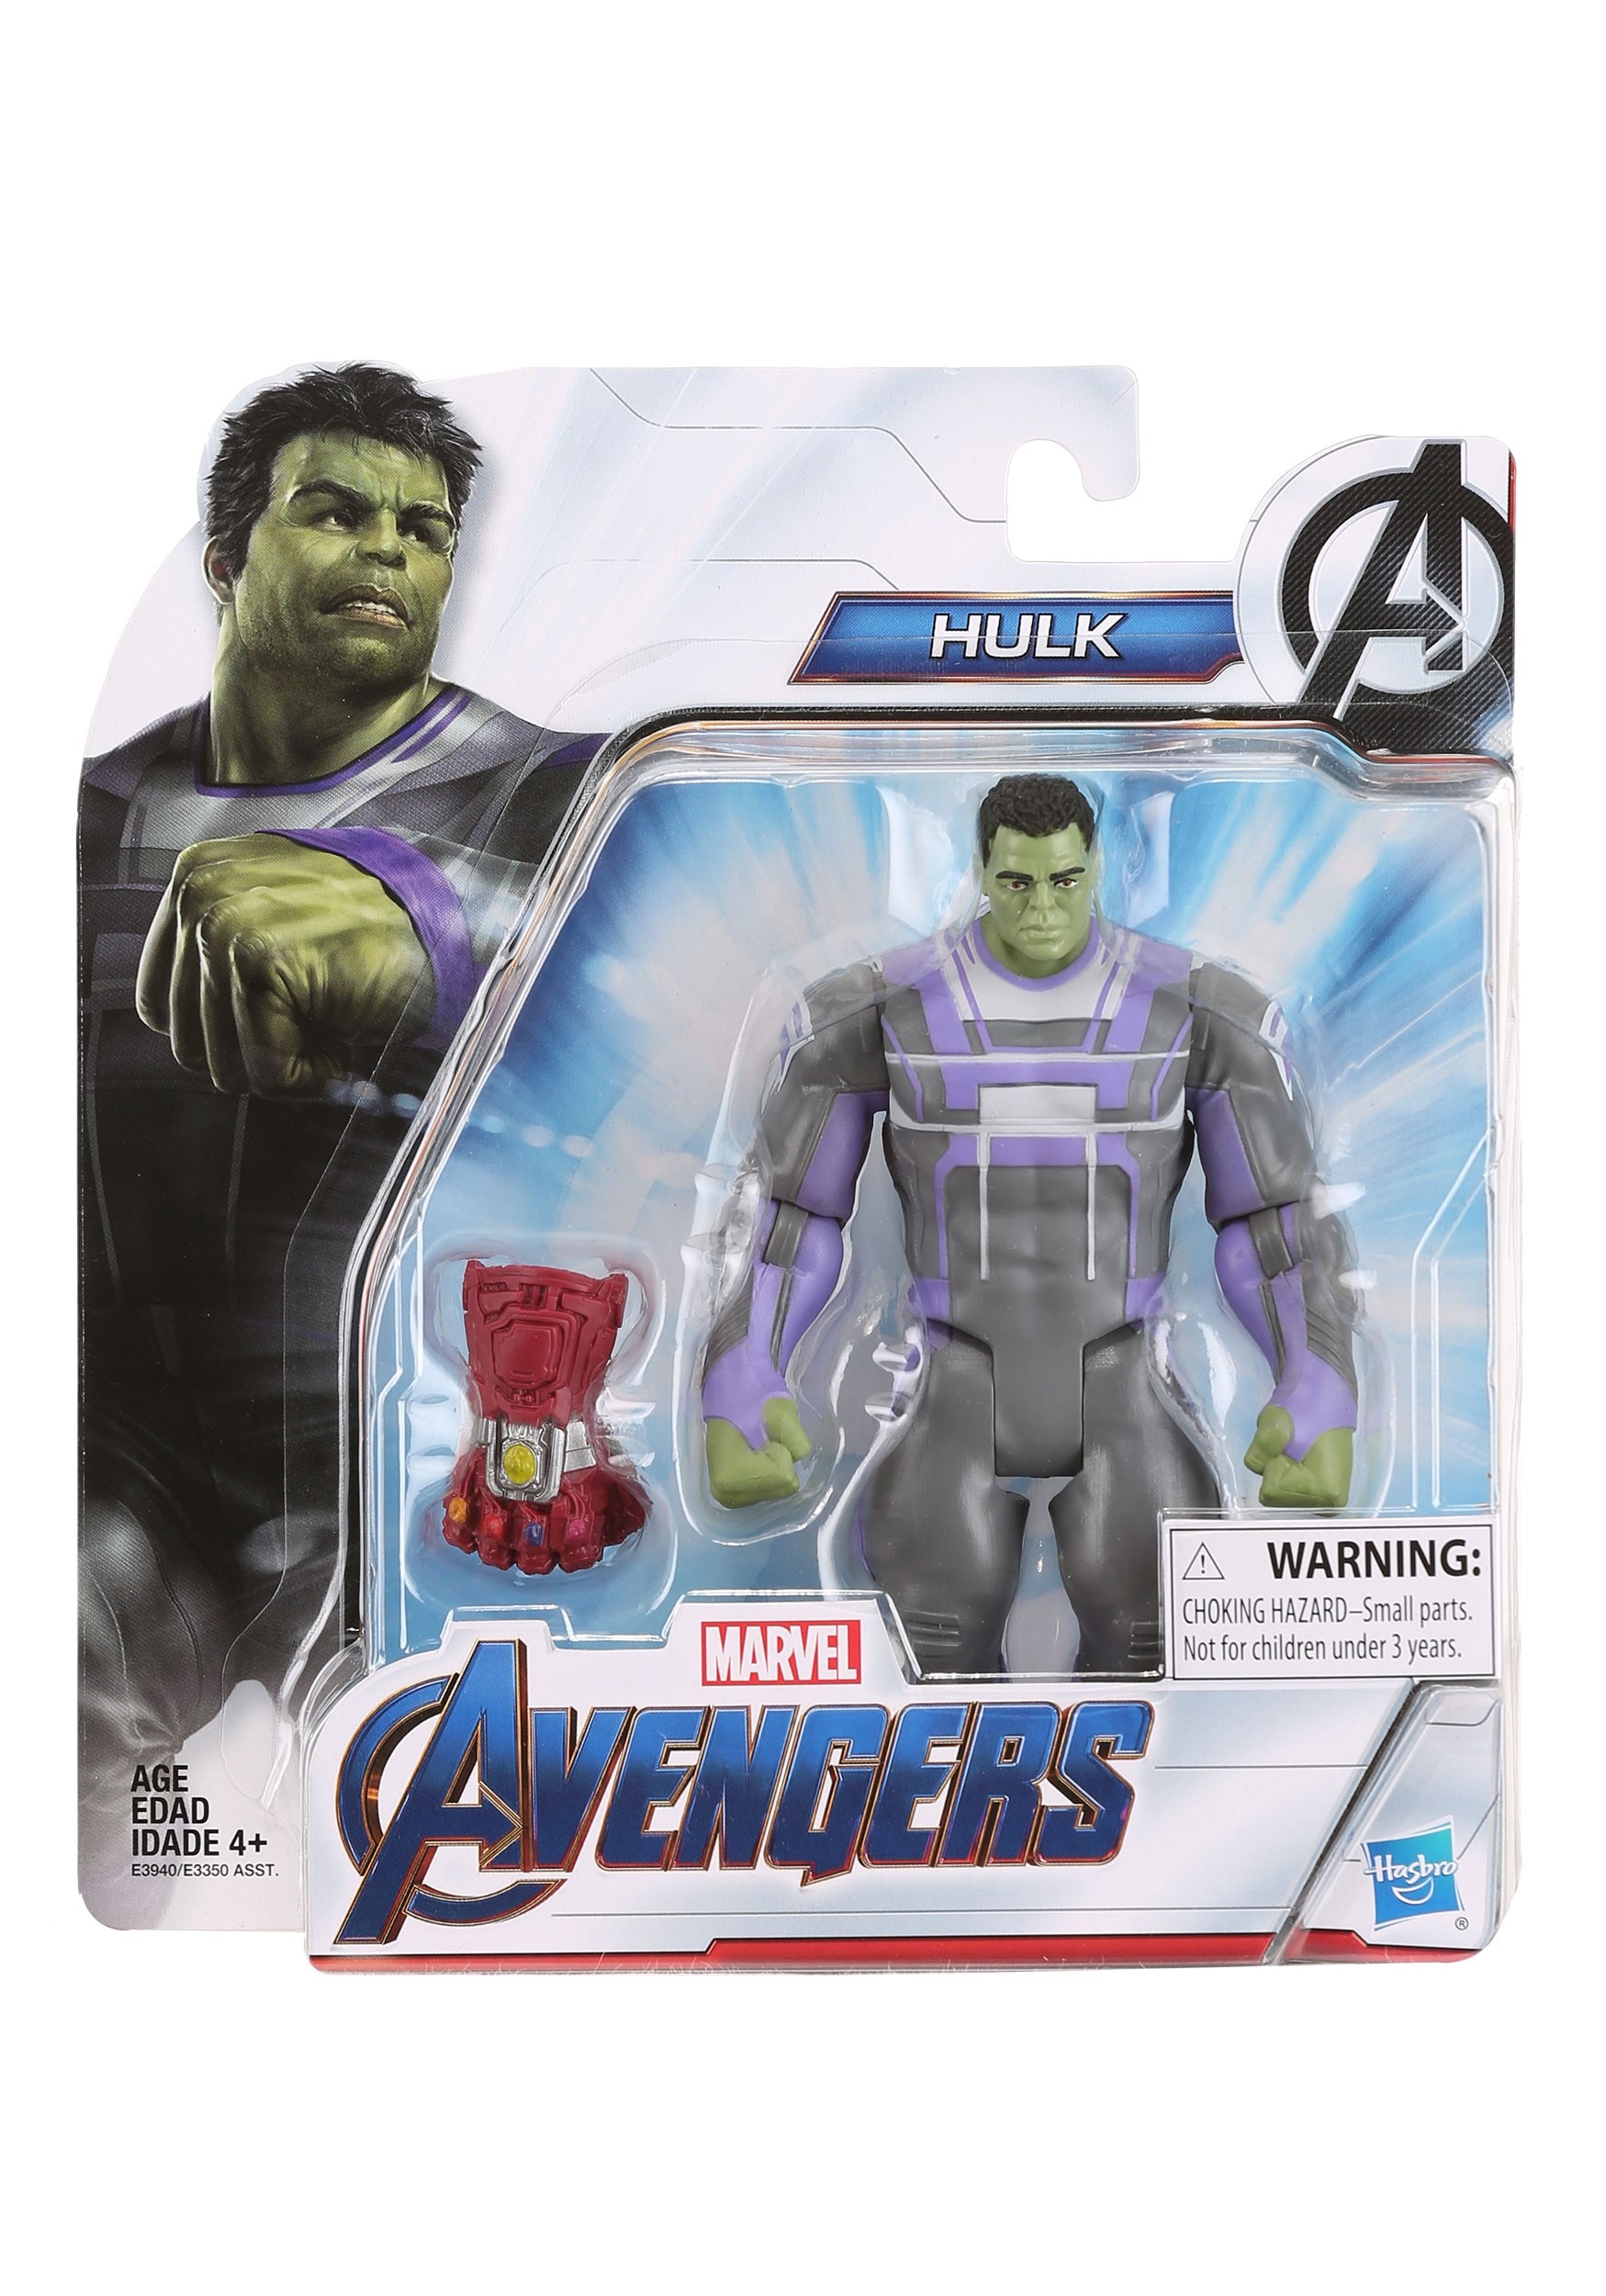 HULK Marvel's Avengers Endgame Deluxe Figure Brand New 